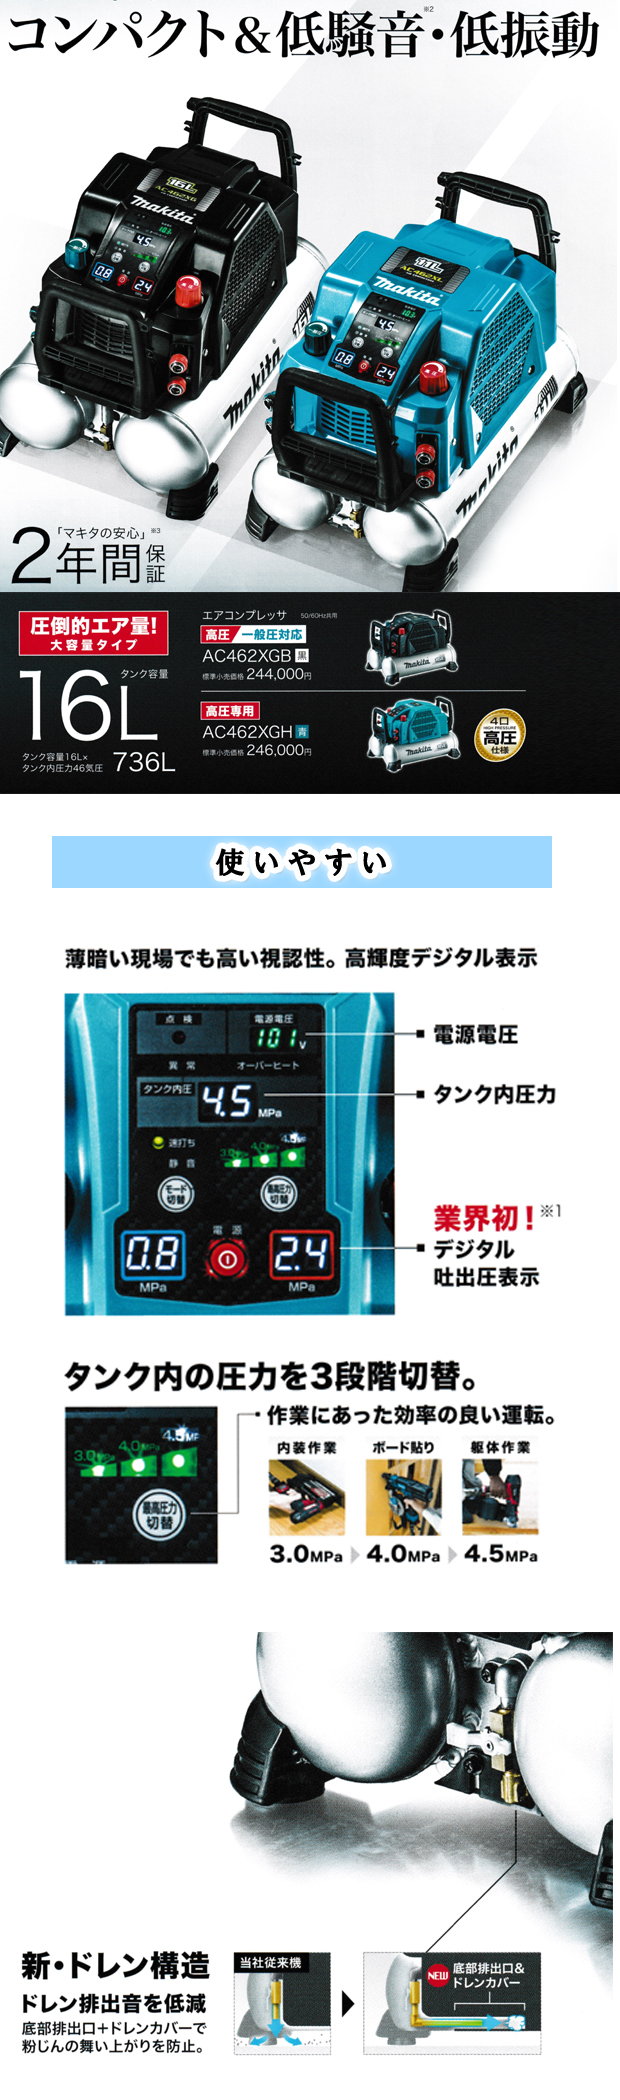 マキタ 46気圧エアコンプレッサ AC462XGB